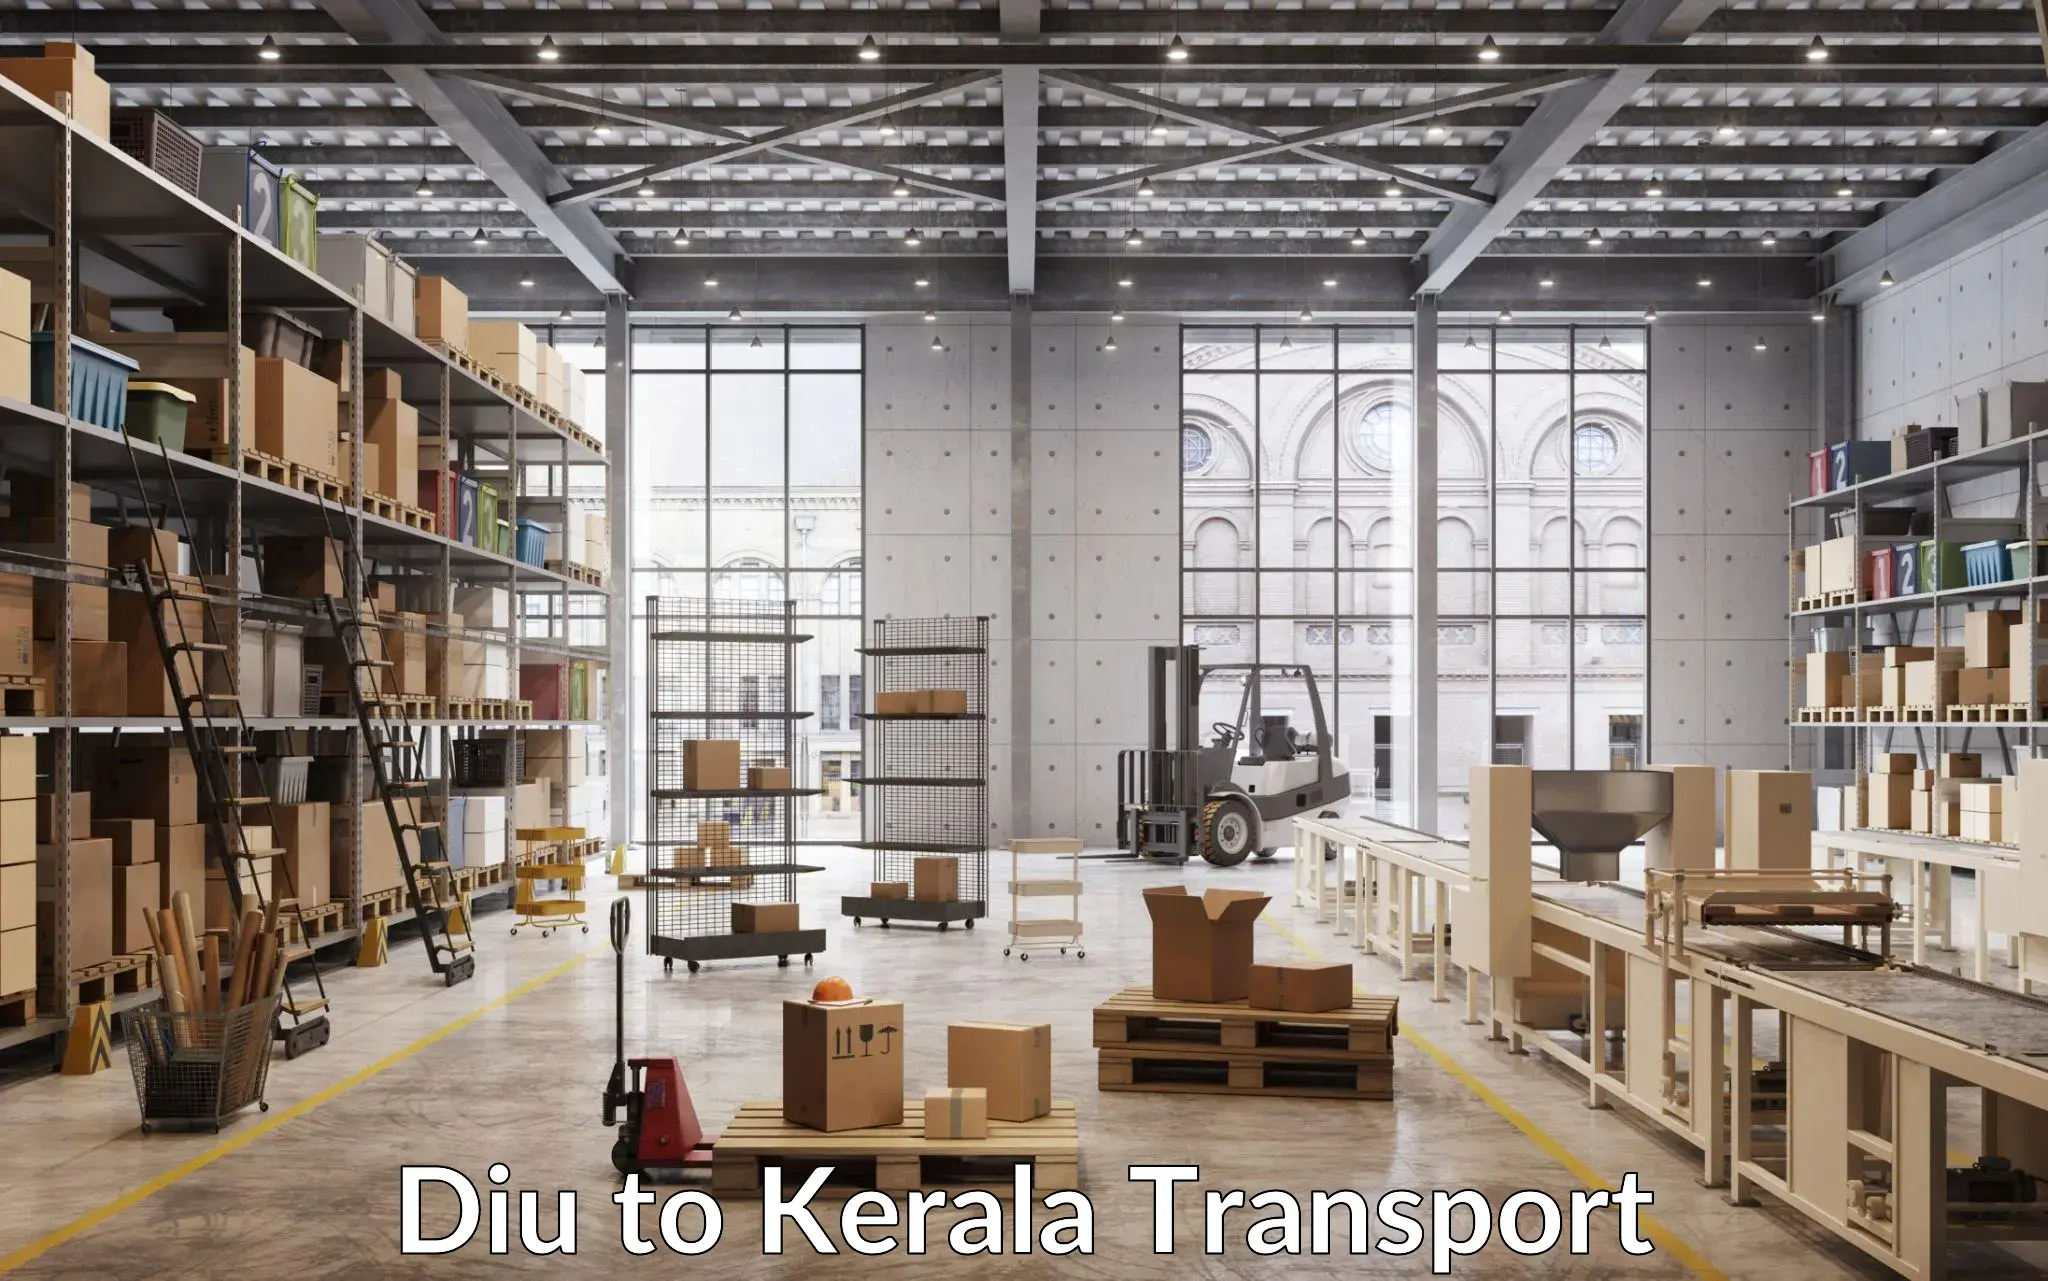 Truck transport companies in India in Diu to Shoranur